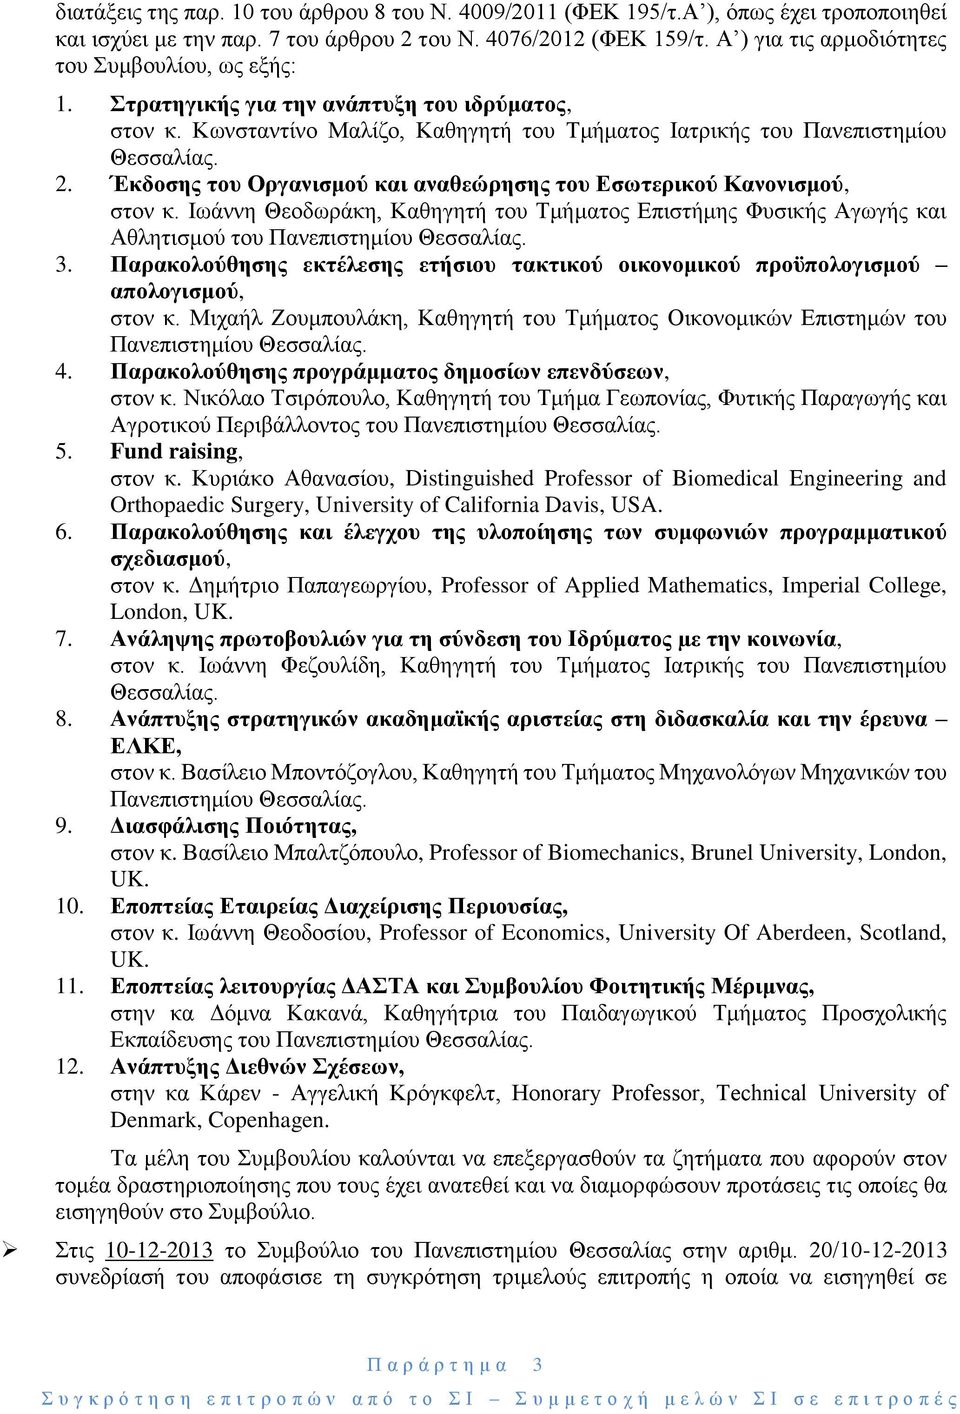 Έκδοσης του Οργανισμού και αναθεώρησης του Εσωτερικού Κανονισμού, στον κ. Ιωάννη Θεοδωράκη, Καθηγητή του Τμήματος Επιστήμης Φυσικής Αγωγής και Αθλητισμού του Πανεπιστημίου Θεσσαλίας. 3.